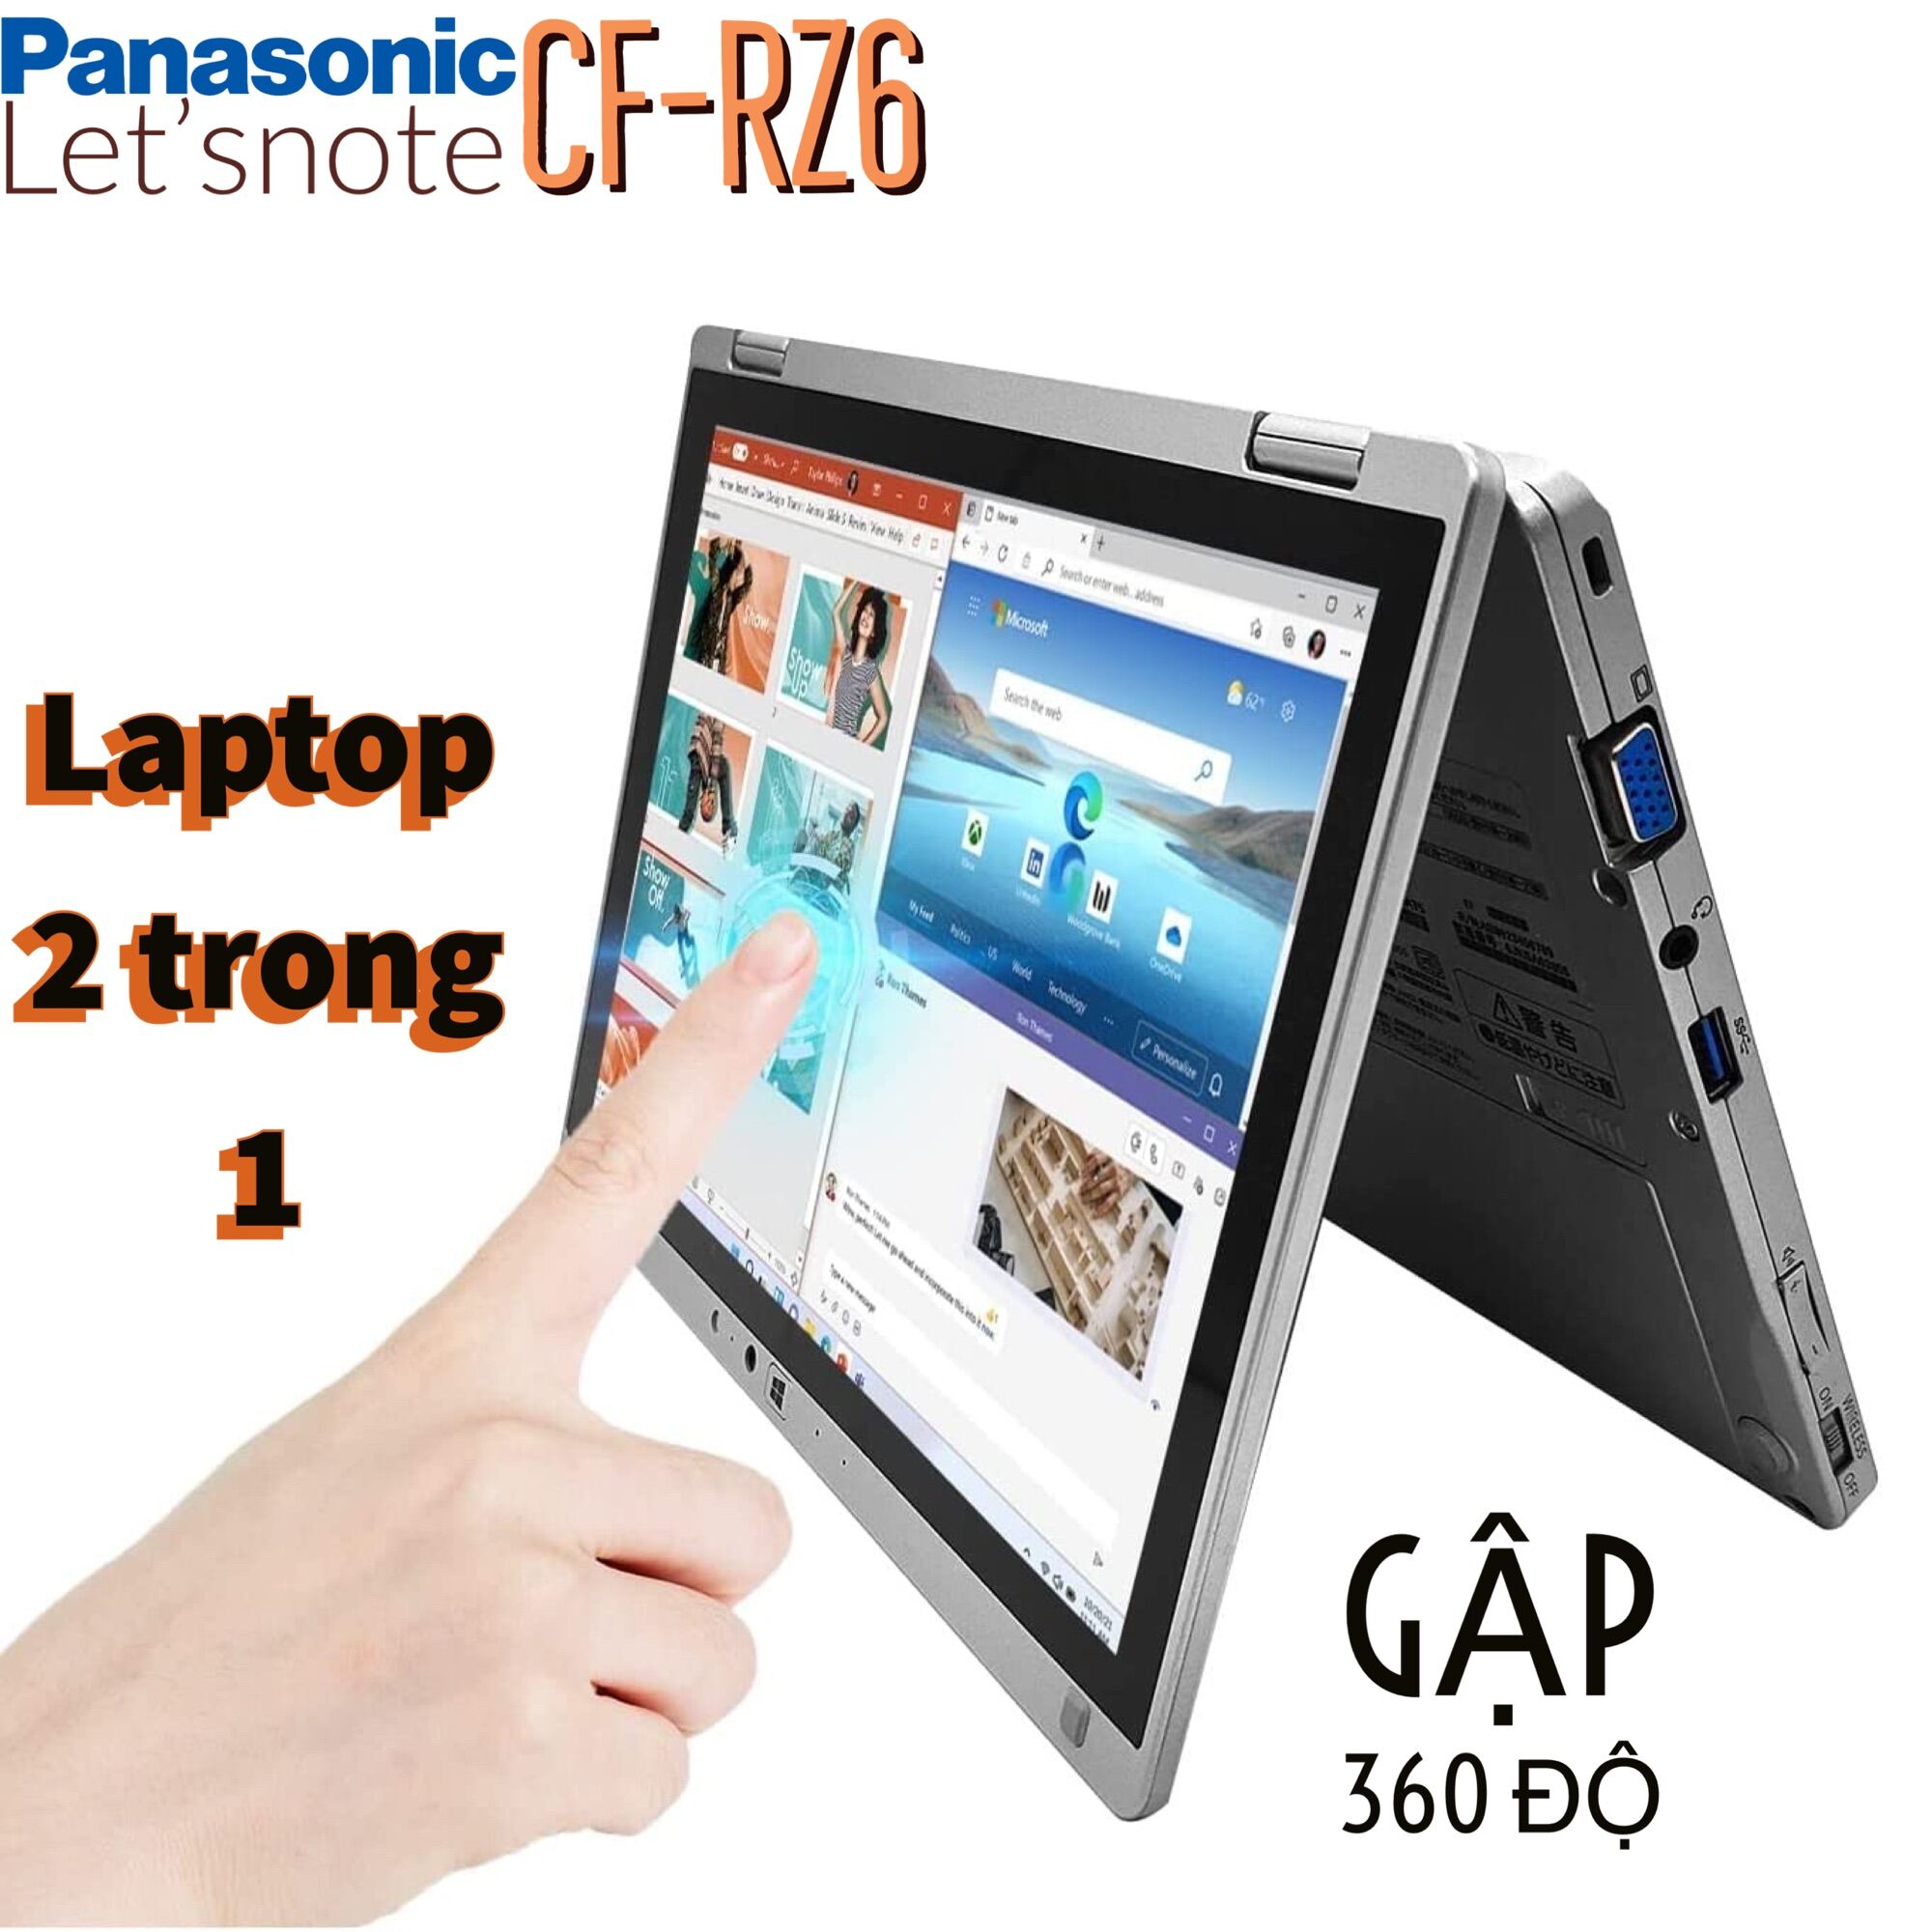 Laptop Panasonic Let’snote CF-RZ6 core i5-7Y57, 8gb ram, 256gb SSD, màn hình gập 360 độ cảm ứng, sim 4G siêu nhẹ 700gram